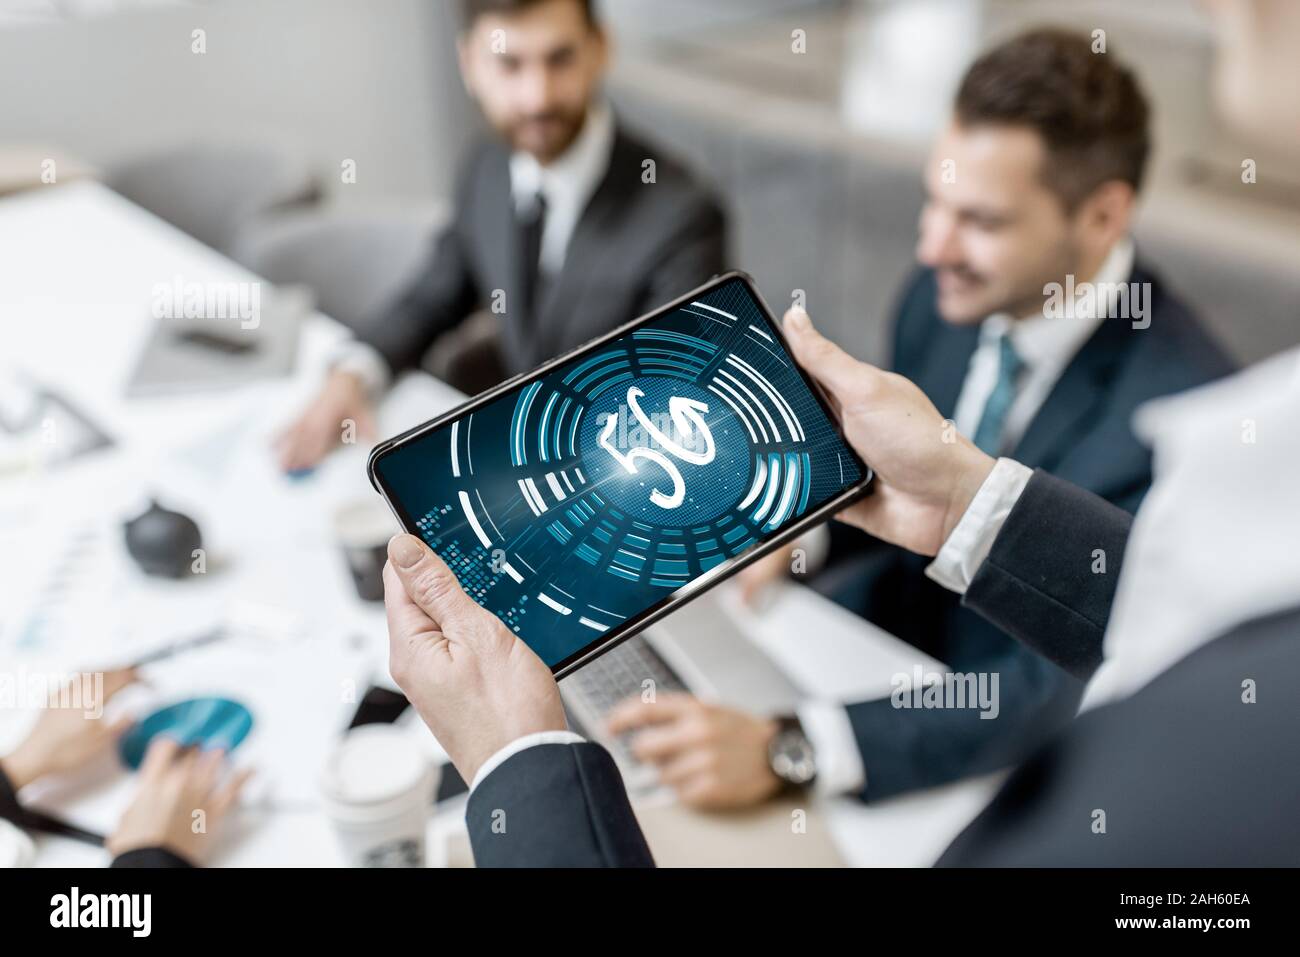 Business people avec la vitesse rapide de la connexion réseau 5g au cours de la réunion à l'intérieur, close-up Banque D'Images